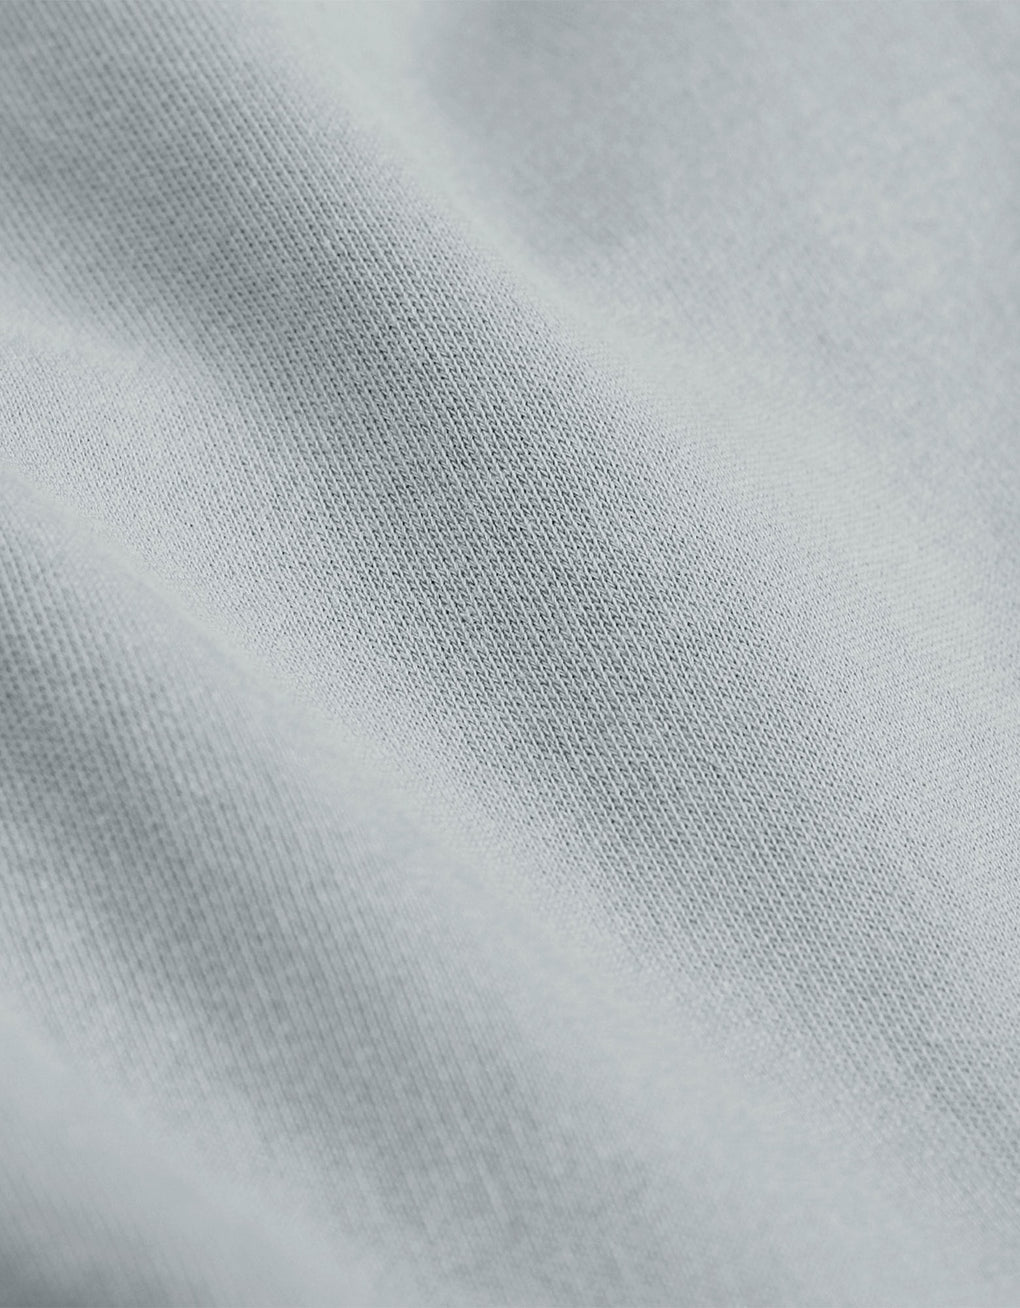 Oversized organic T-Shirt - limestone grey